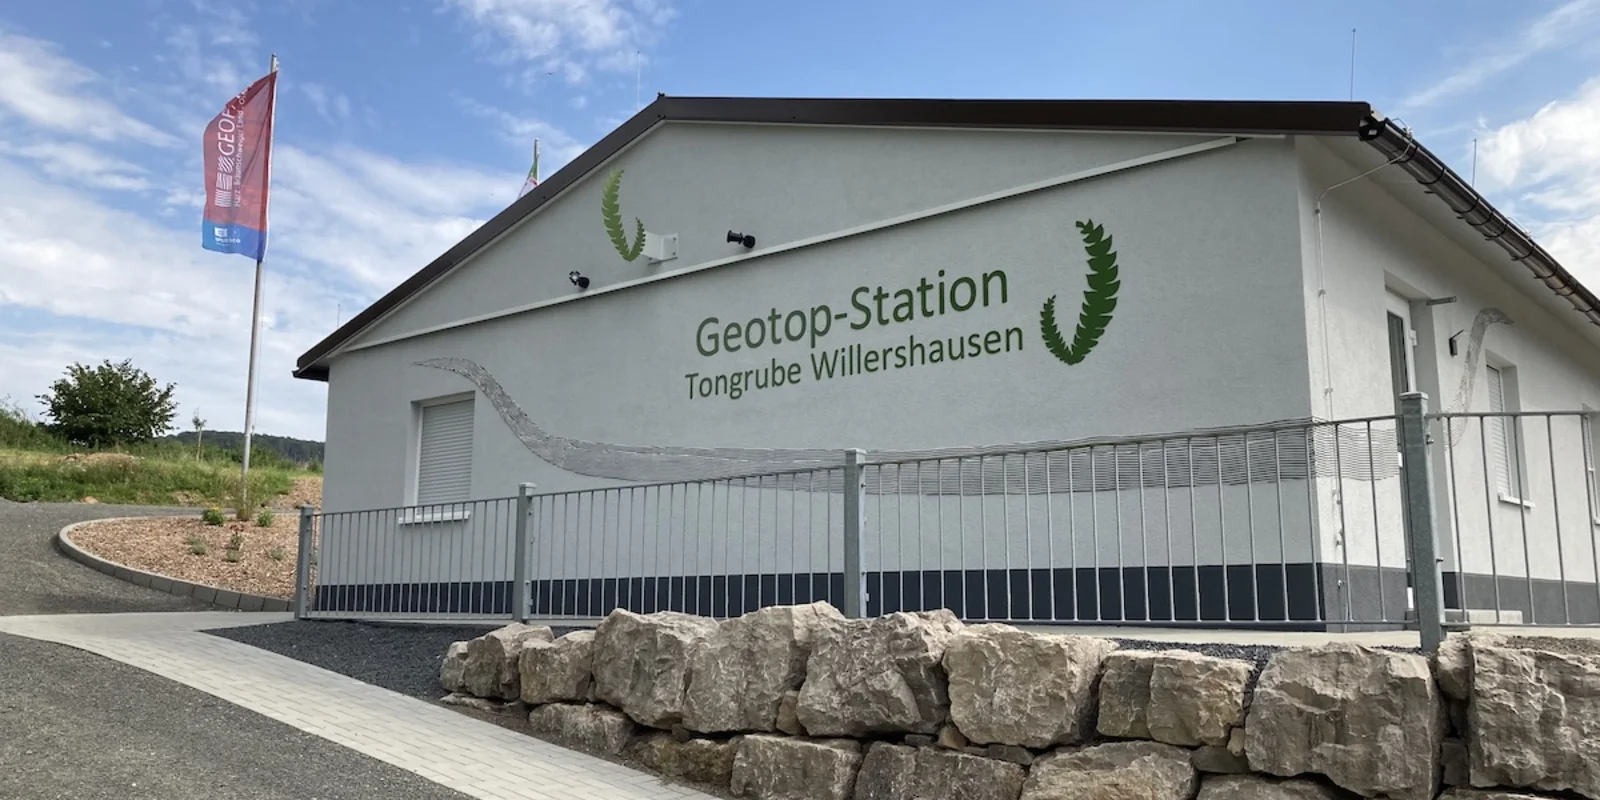 Ein weiß gestrichenes einstöckiges Gebäude, auf dessen Fassade in grüner Schrift "Geotop-Station Tongrube Willershausen" zu lesen ist